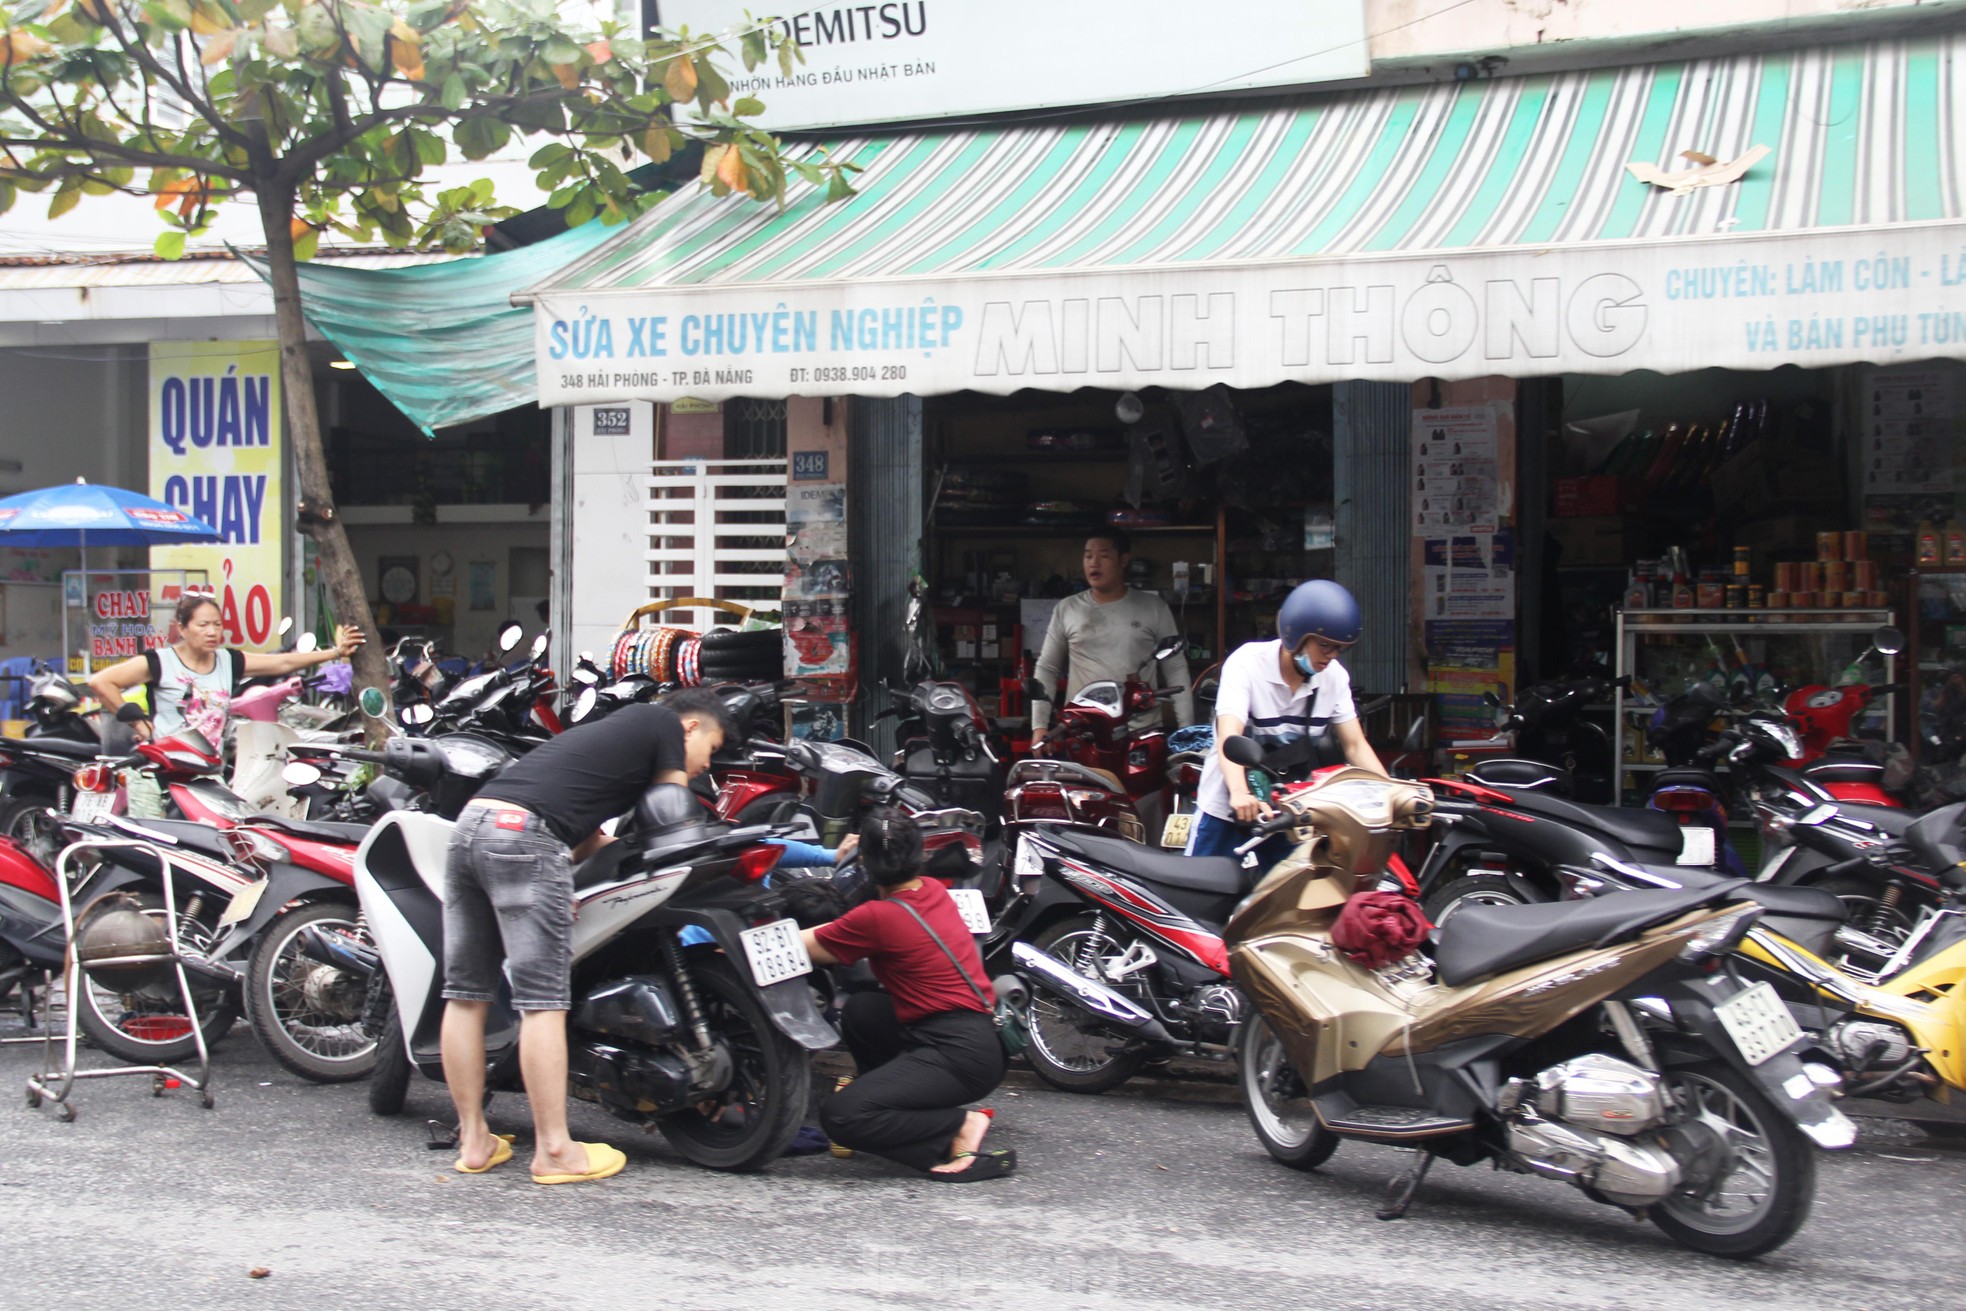 Những địa điểm cho thuê xe máy Đà Nẵng uy tín giá rẻ